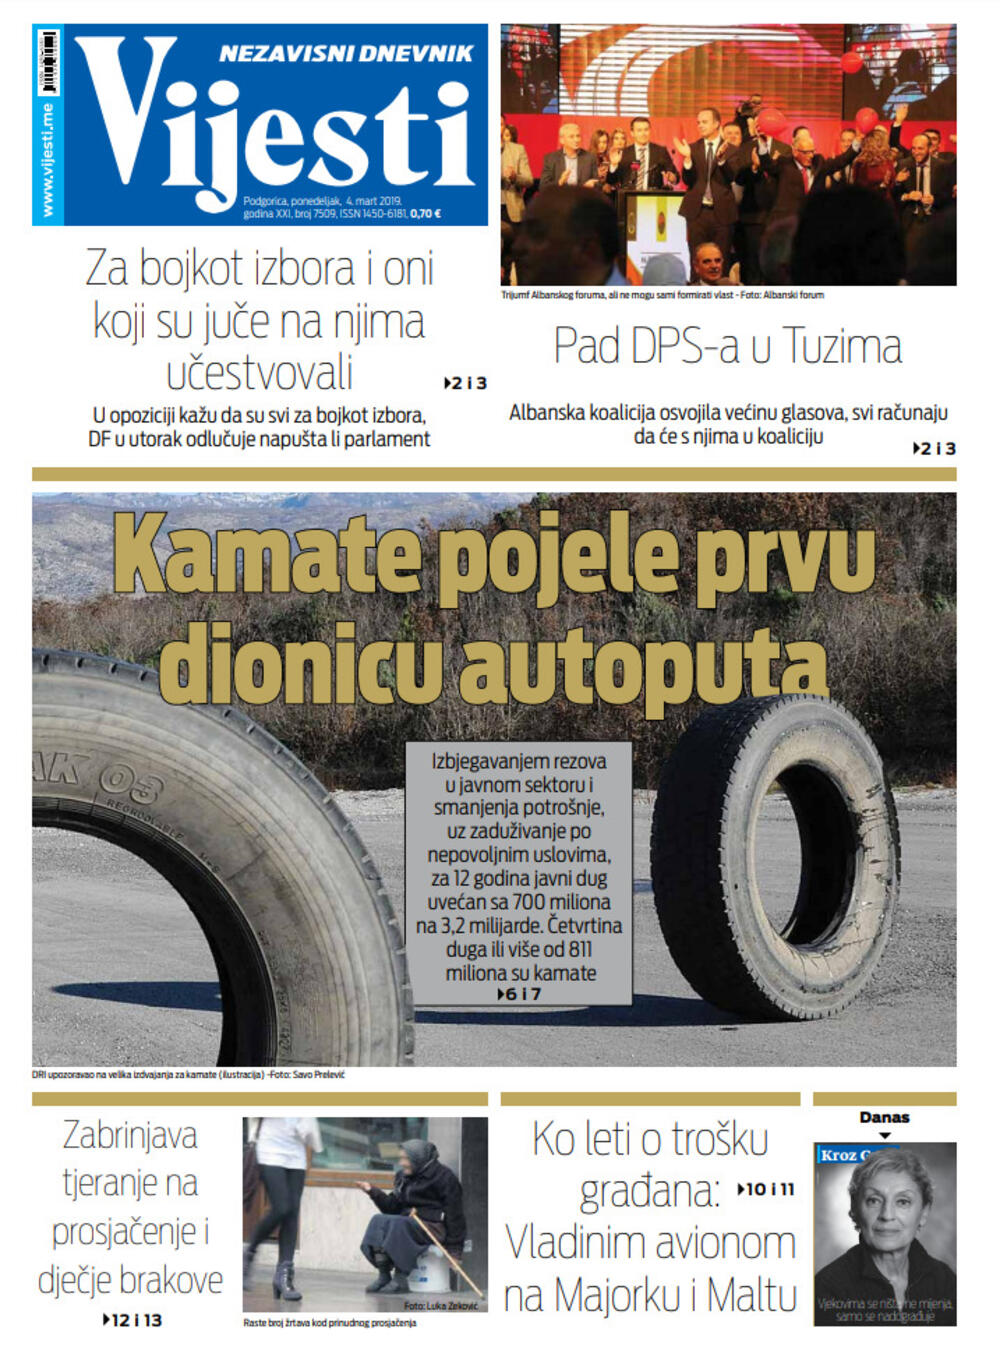 Naslovna strana "Vijesti" za 4. mart, Foto: Vijesti